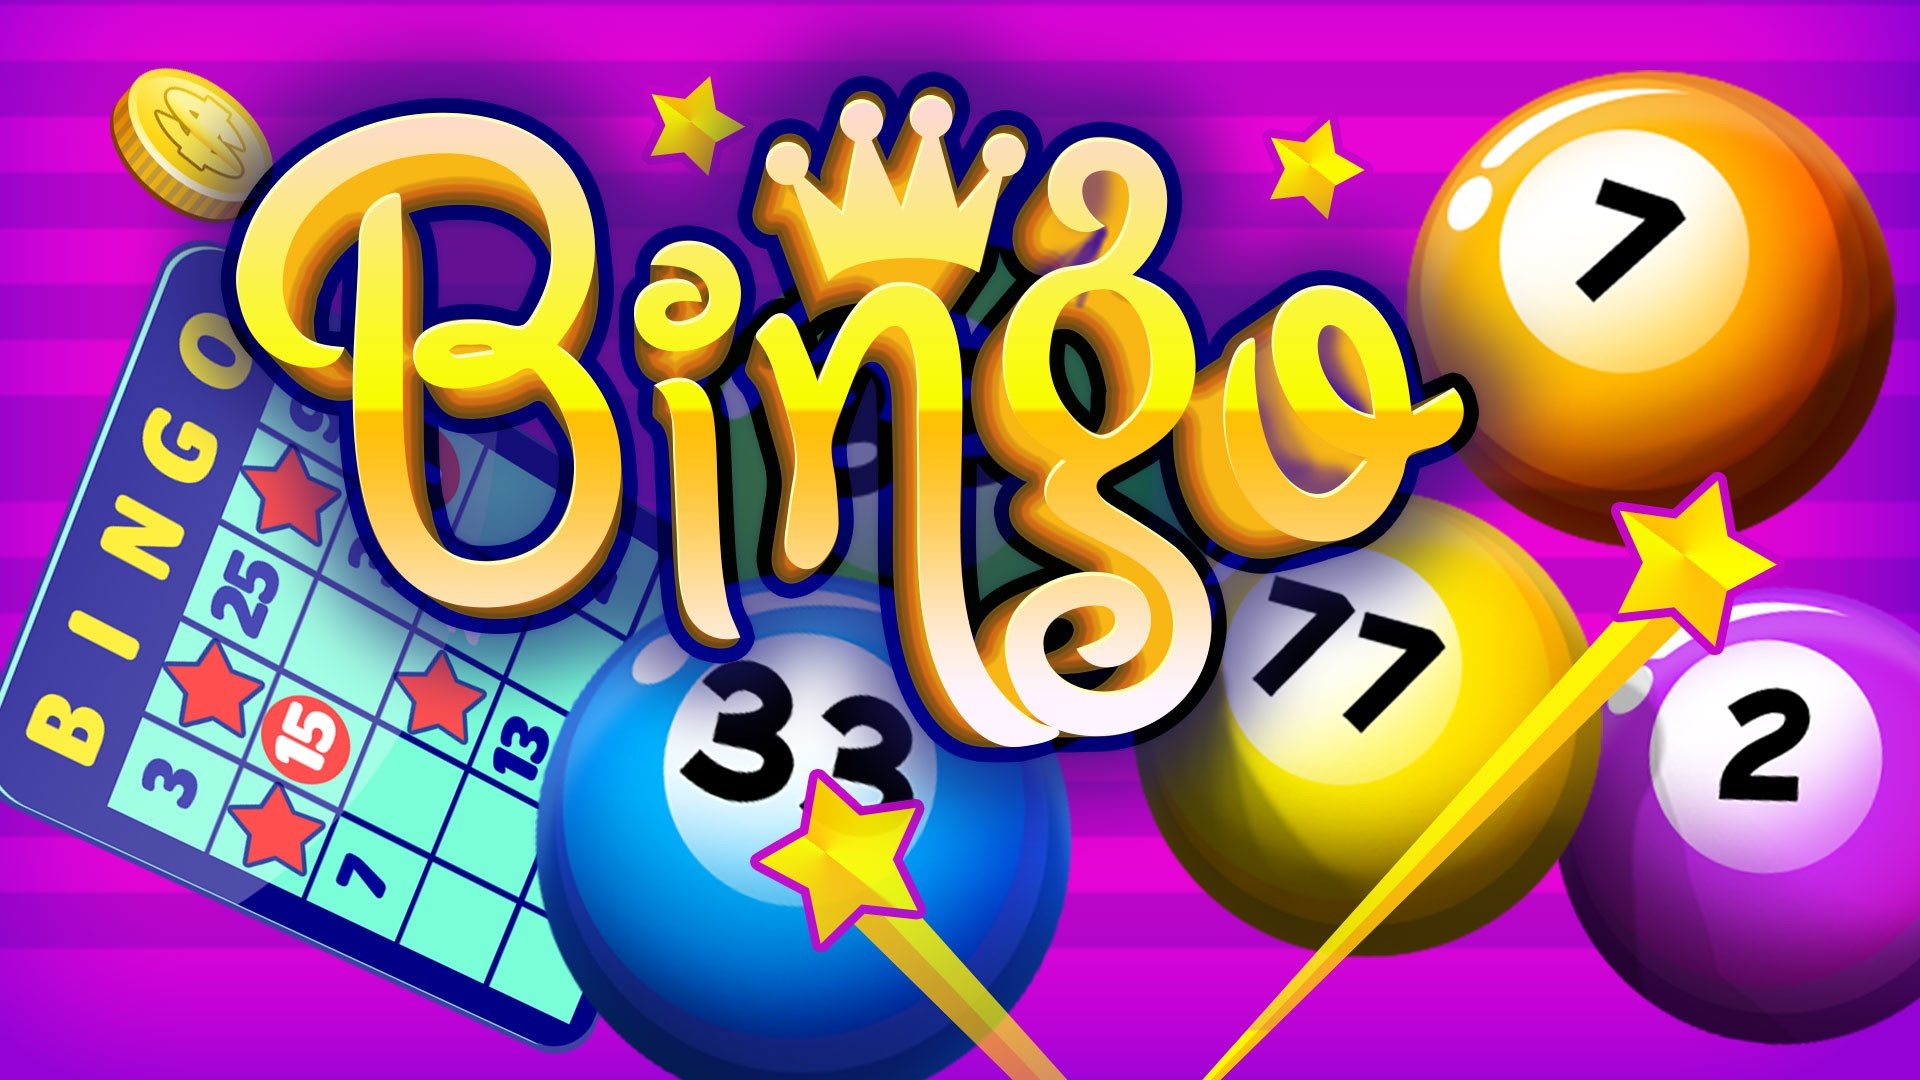 How to win bingo guaranteed